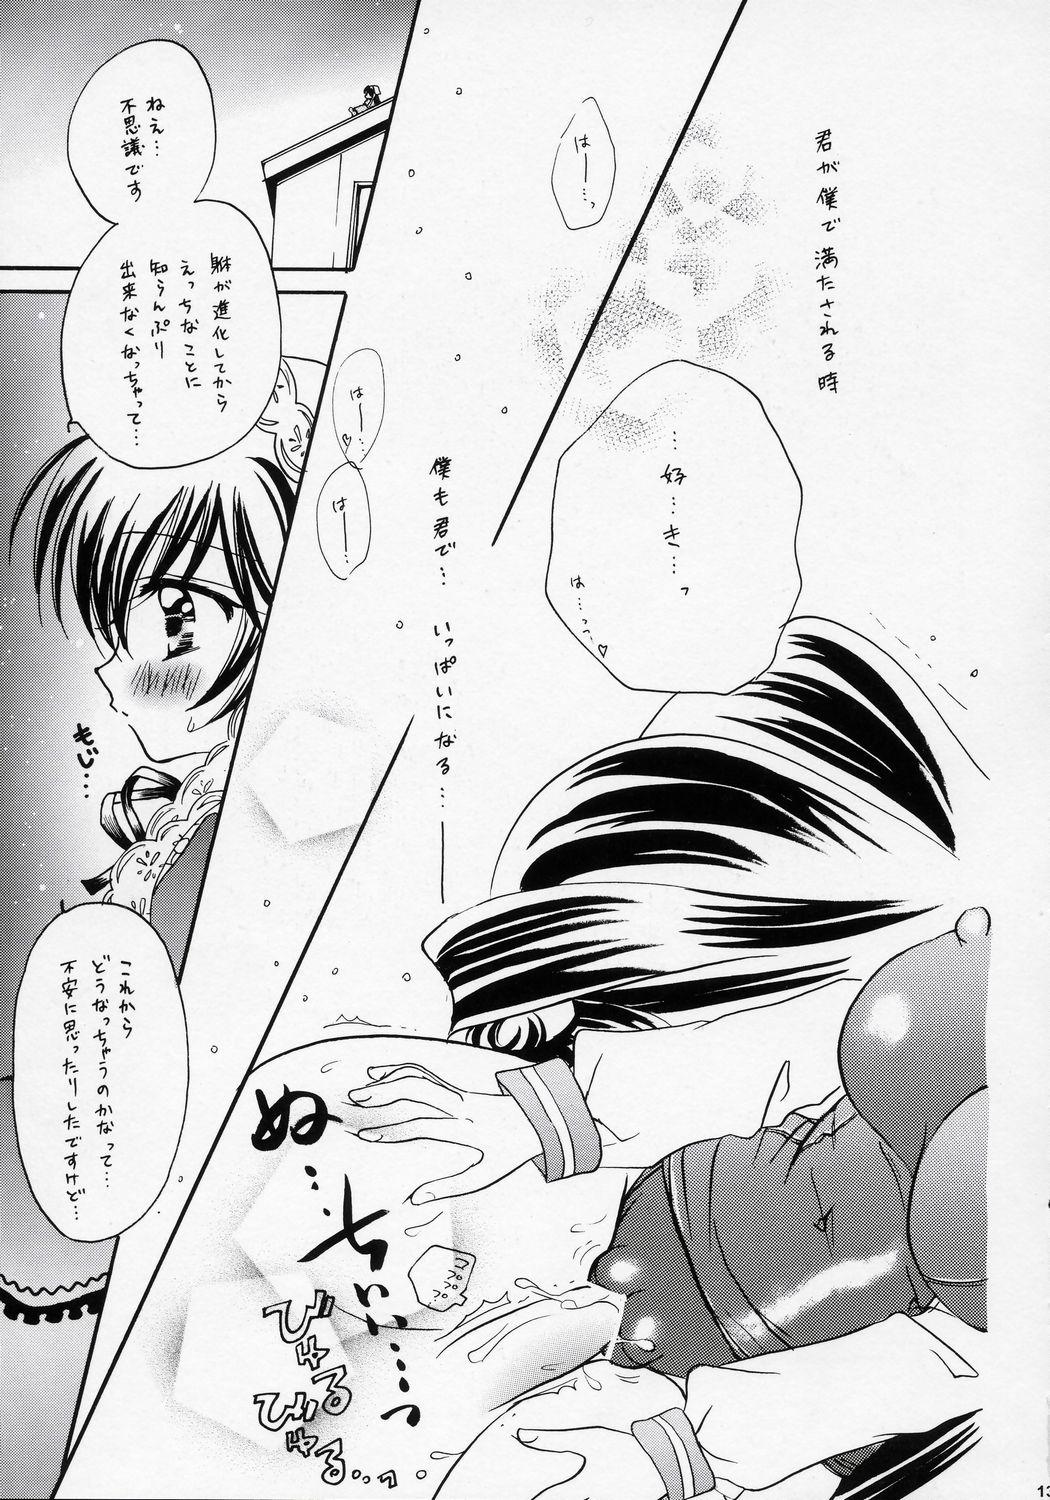 Big Pussy Misoka - Rozen maiden Menage - Page 12